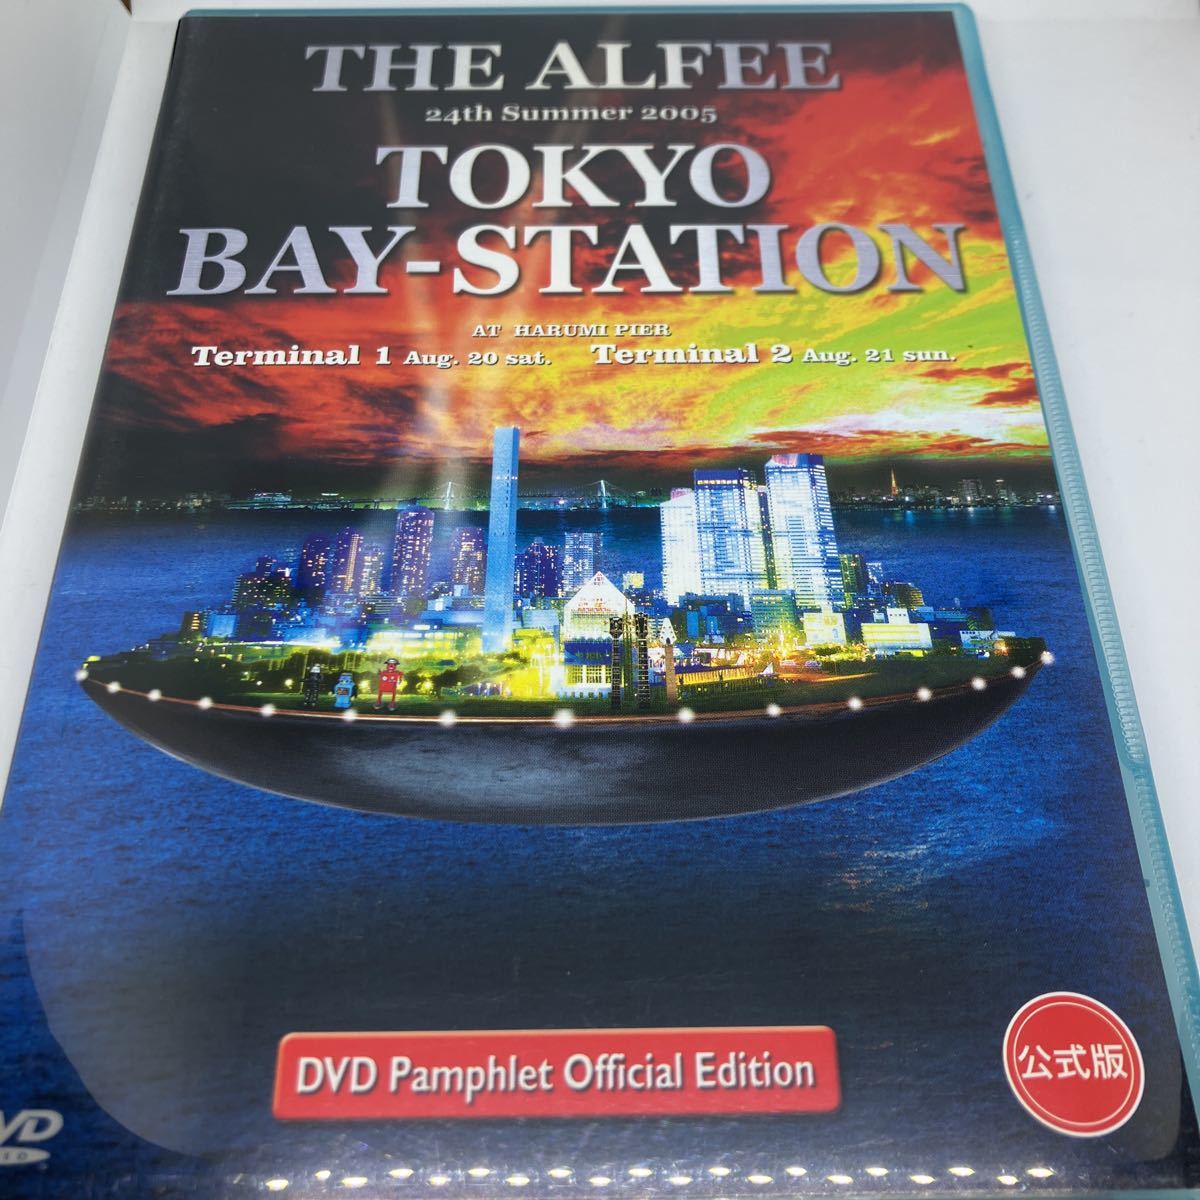 アルフィー DVD THE ALFEE 24th Summer 2005 TOKYO BAY-STATION 非公式版-